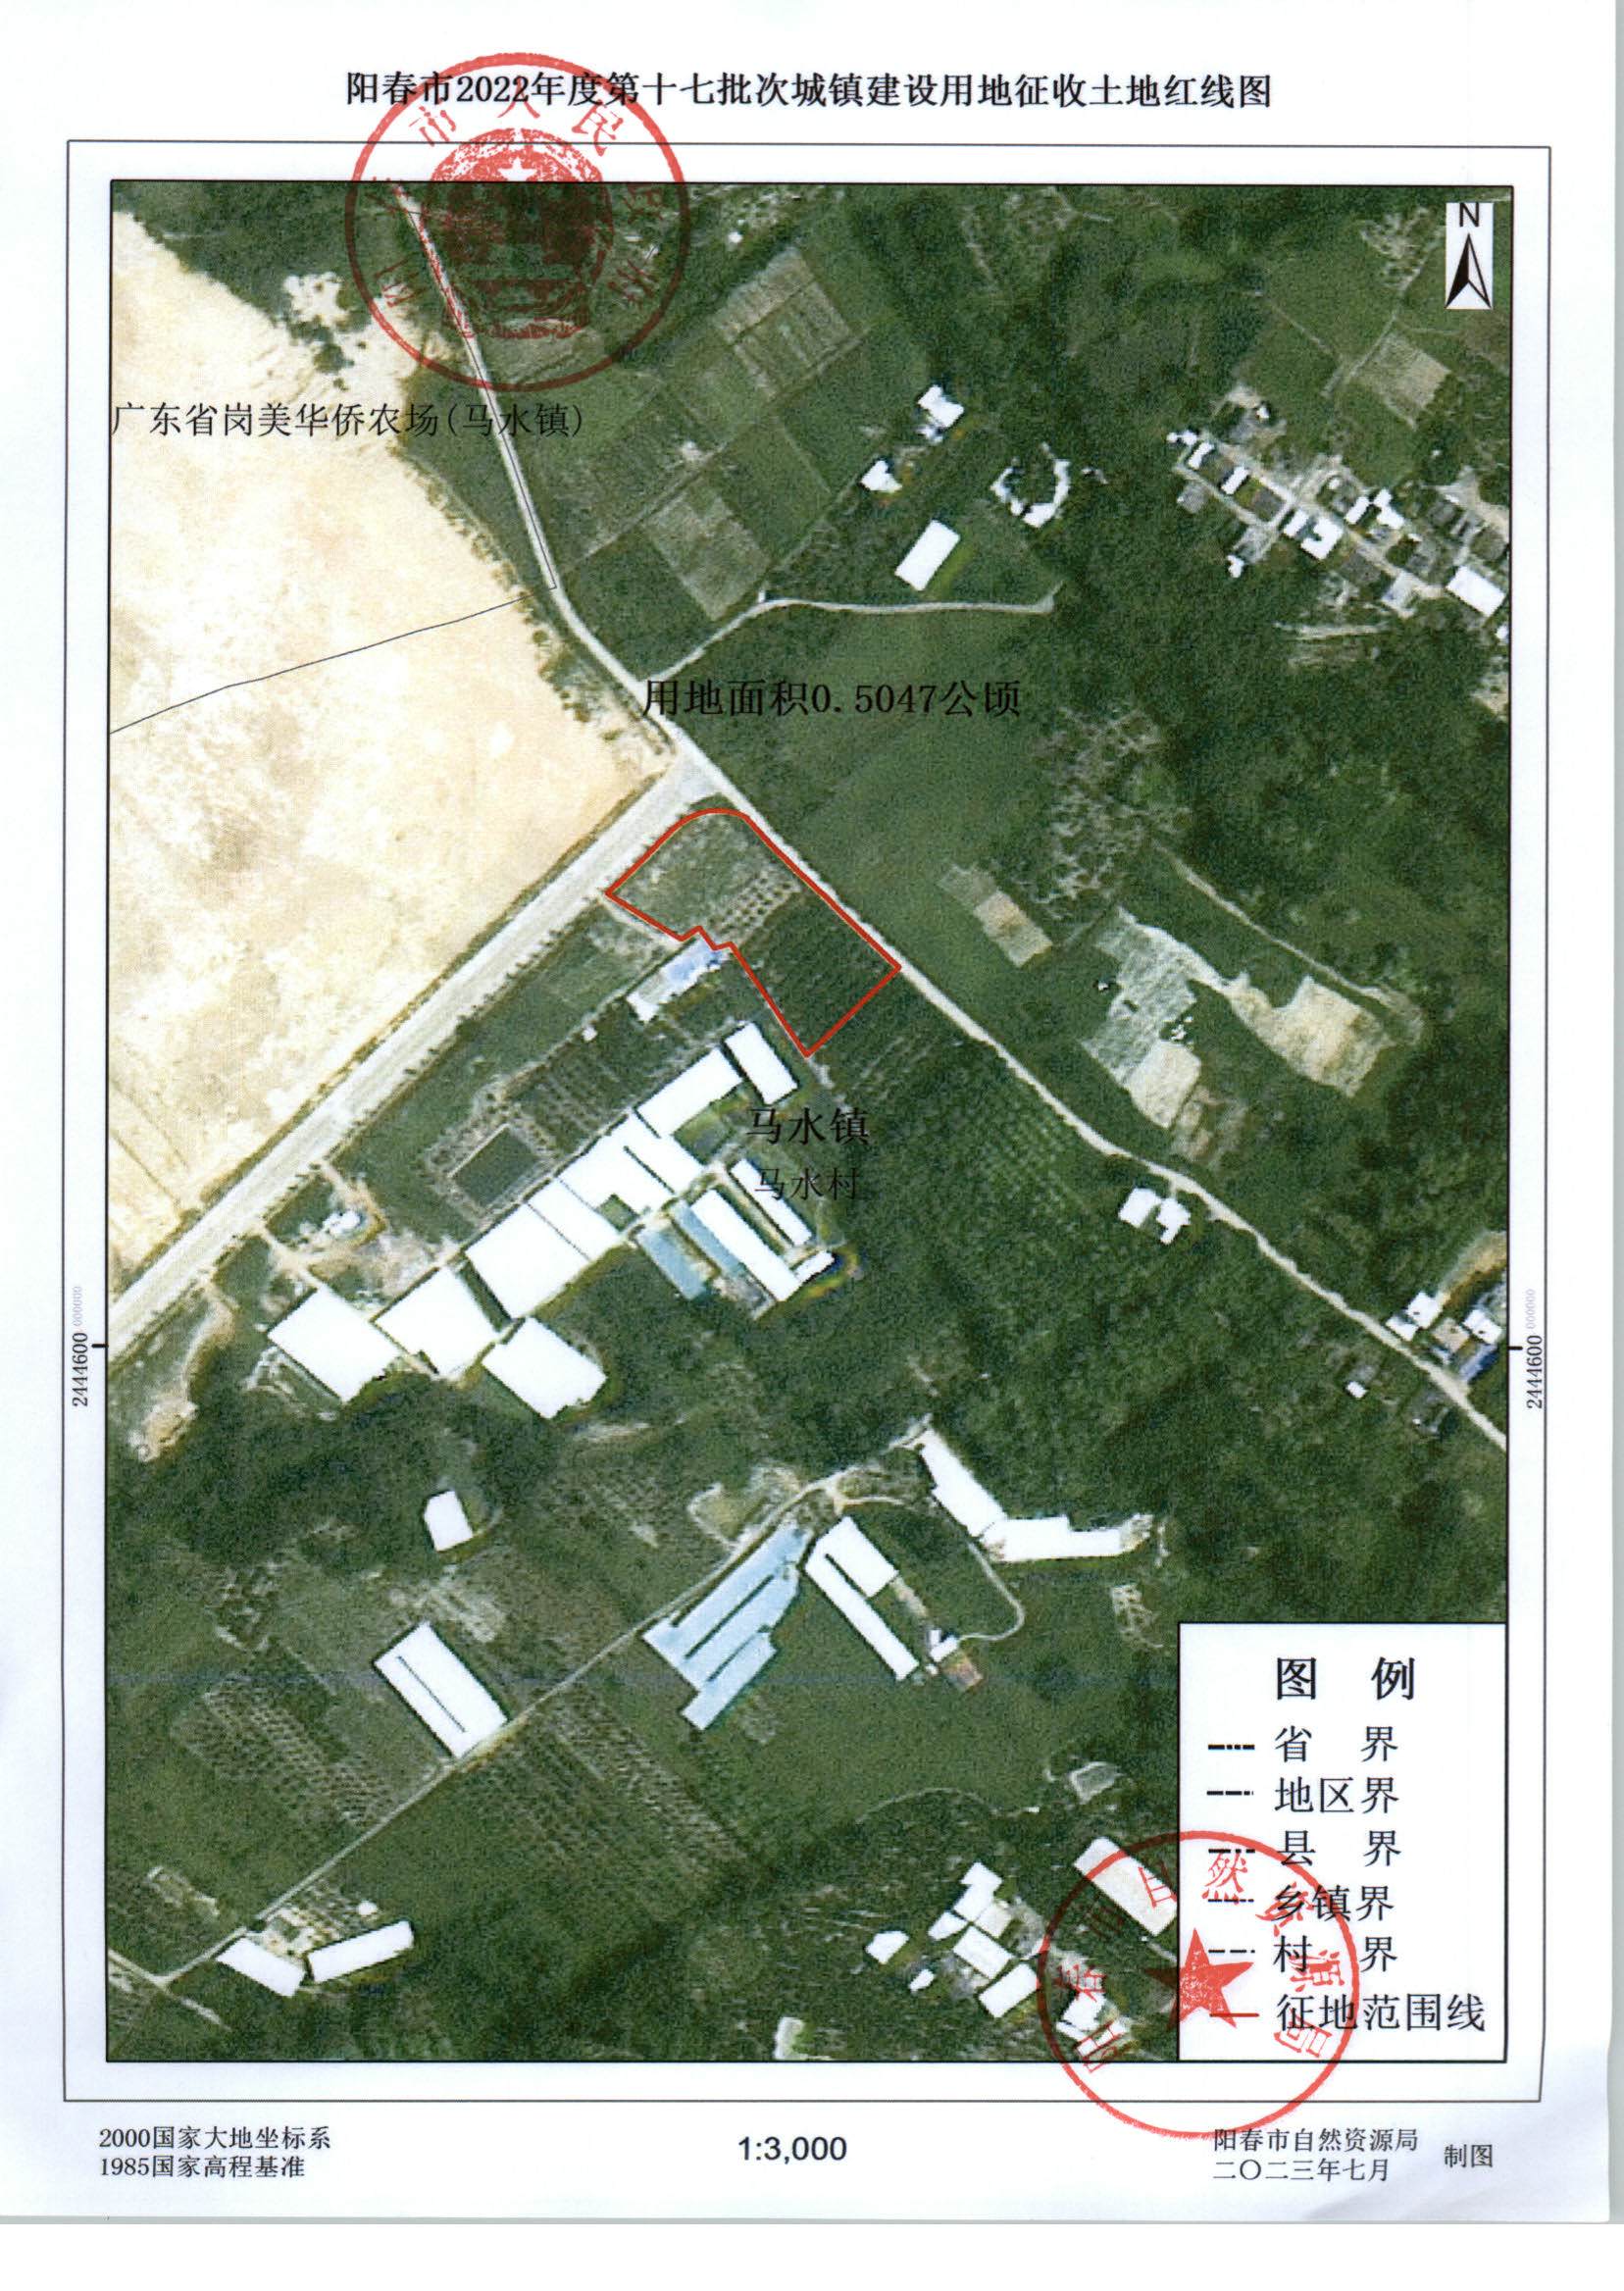 阳春市人民政府关于土地征收的公告 2022年度第十七批次城镇建设用地 8.2_页面_4.jpg